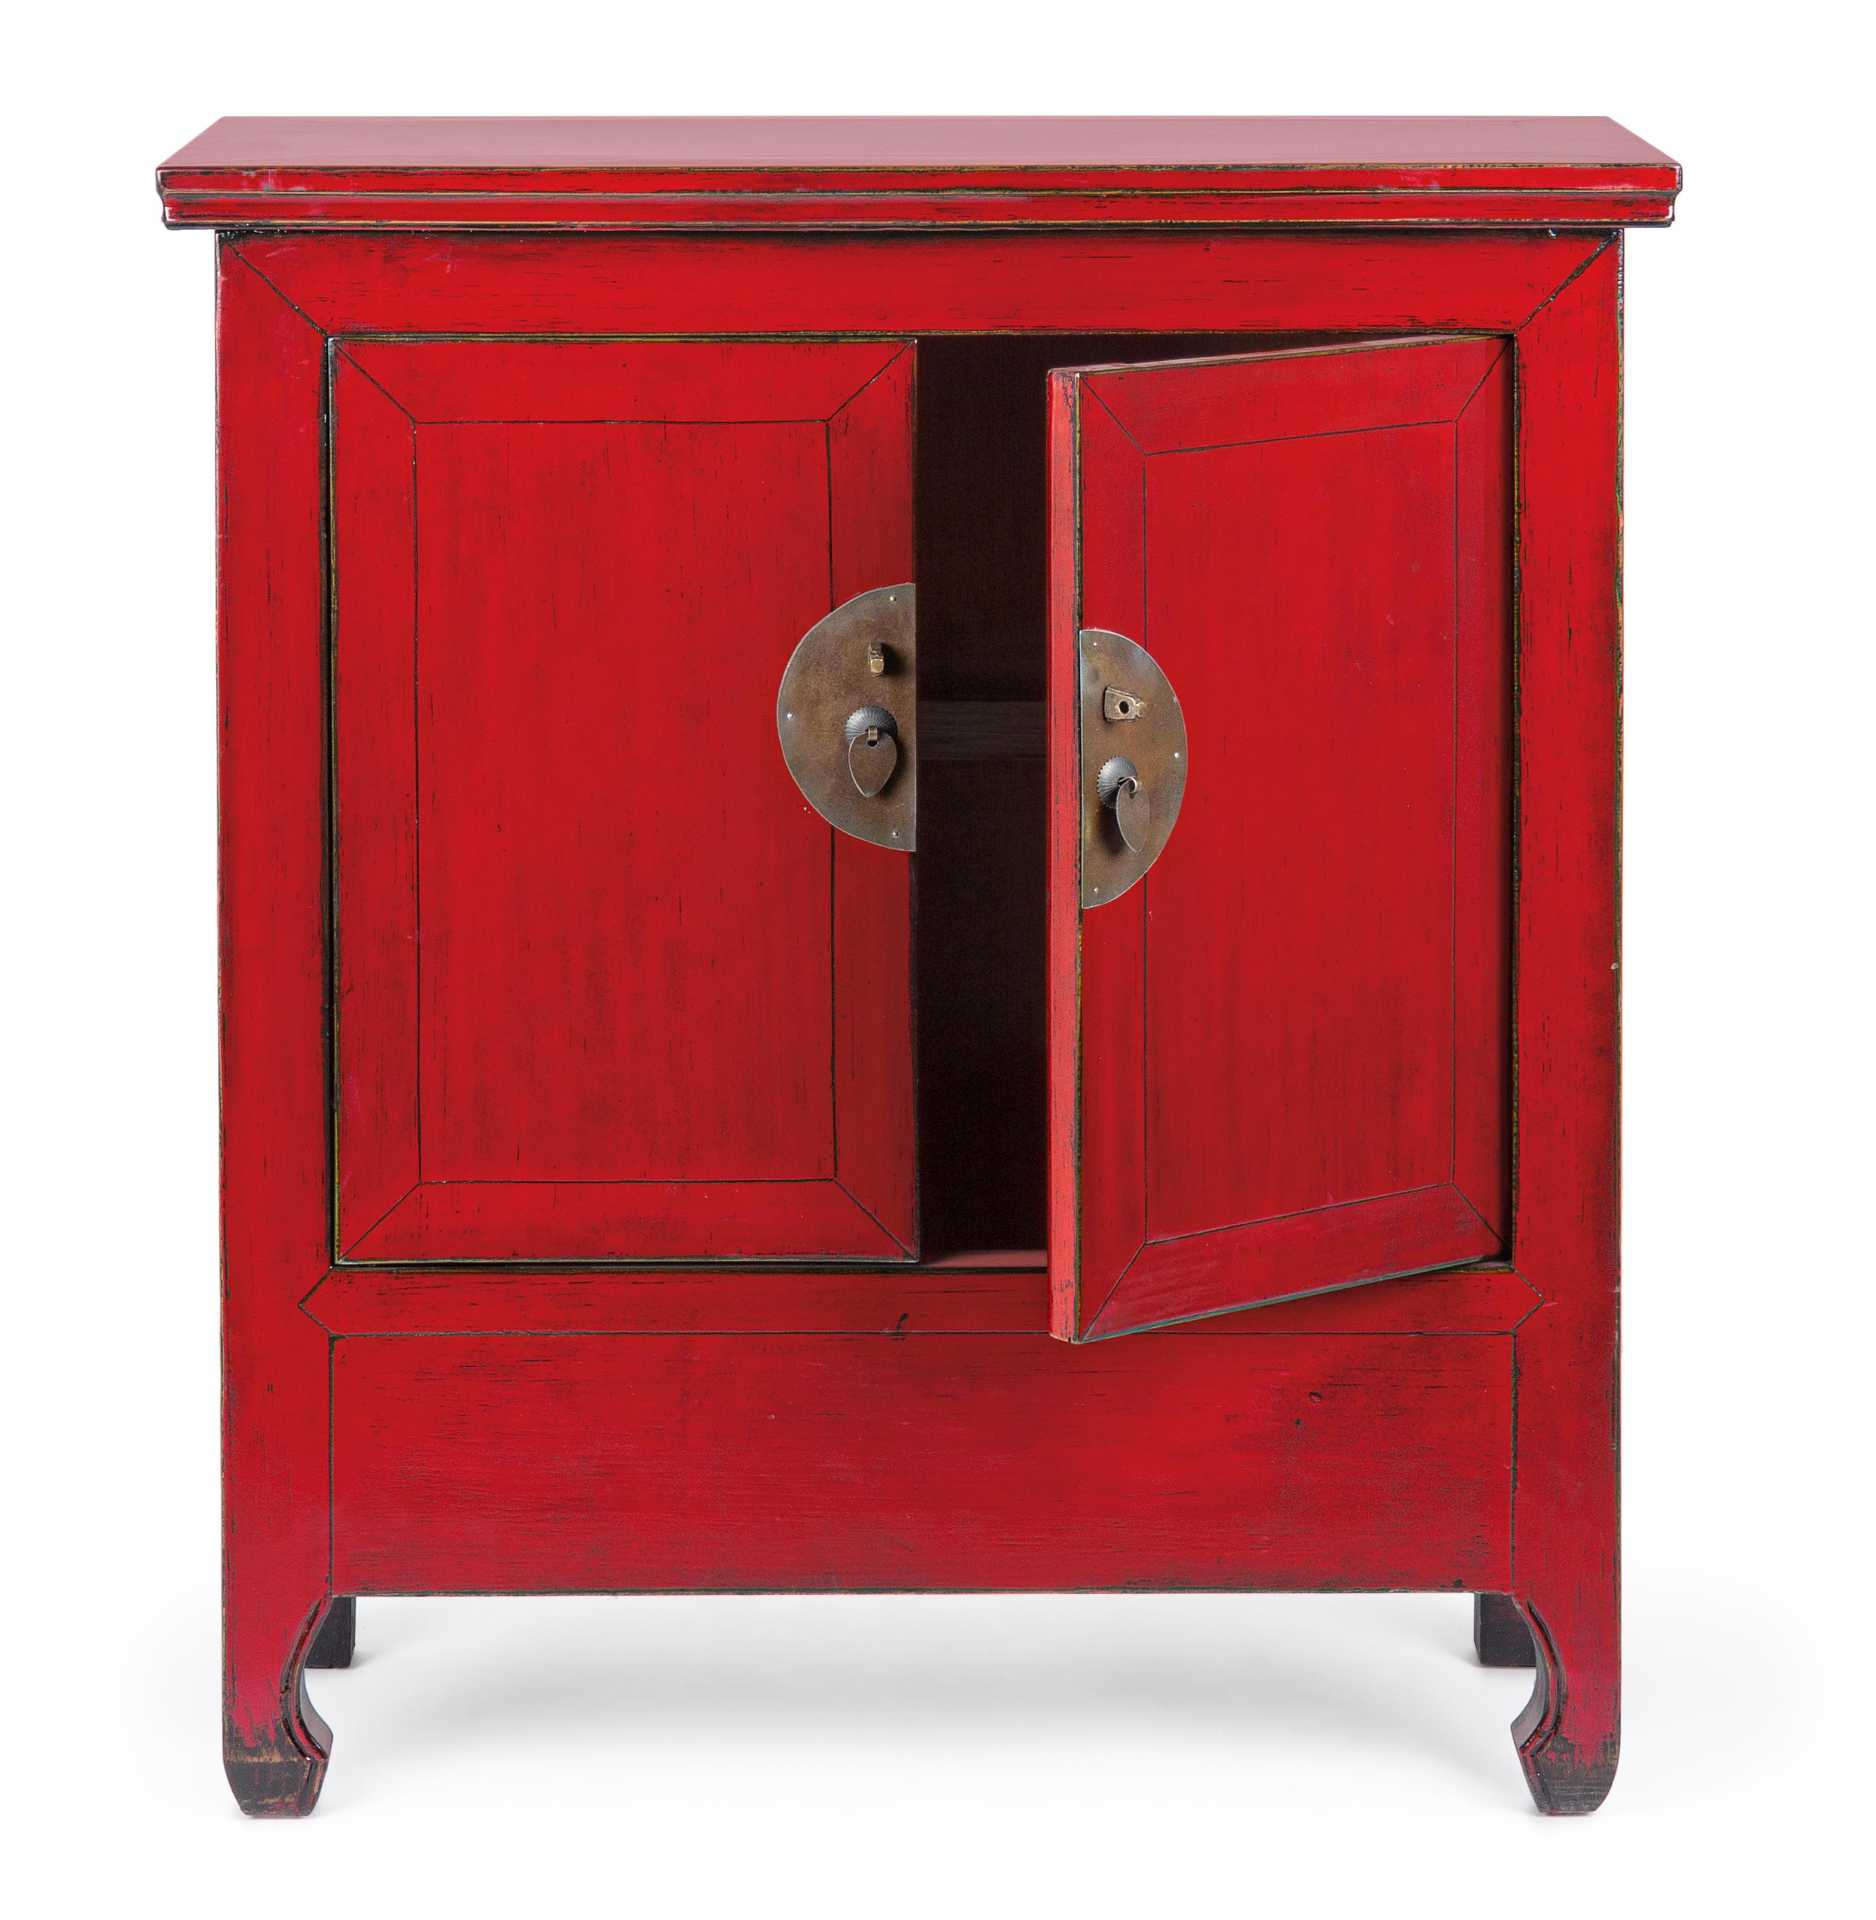 Die Kommode Jinan überzeugt mit ihrem klassischen Design. Gefertigt wurde sie aus Ulmen-Holz, welches einen roten Farbton besitzt. Das Gestell ist auch aus Ulmen-Holz. Die Kommode verfügt über zwei Türen. Die Breite beträgt 89 cm.